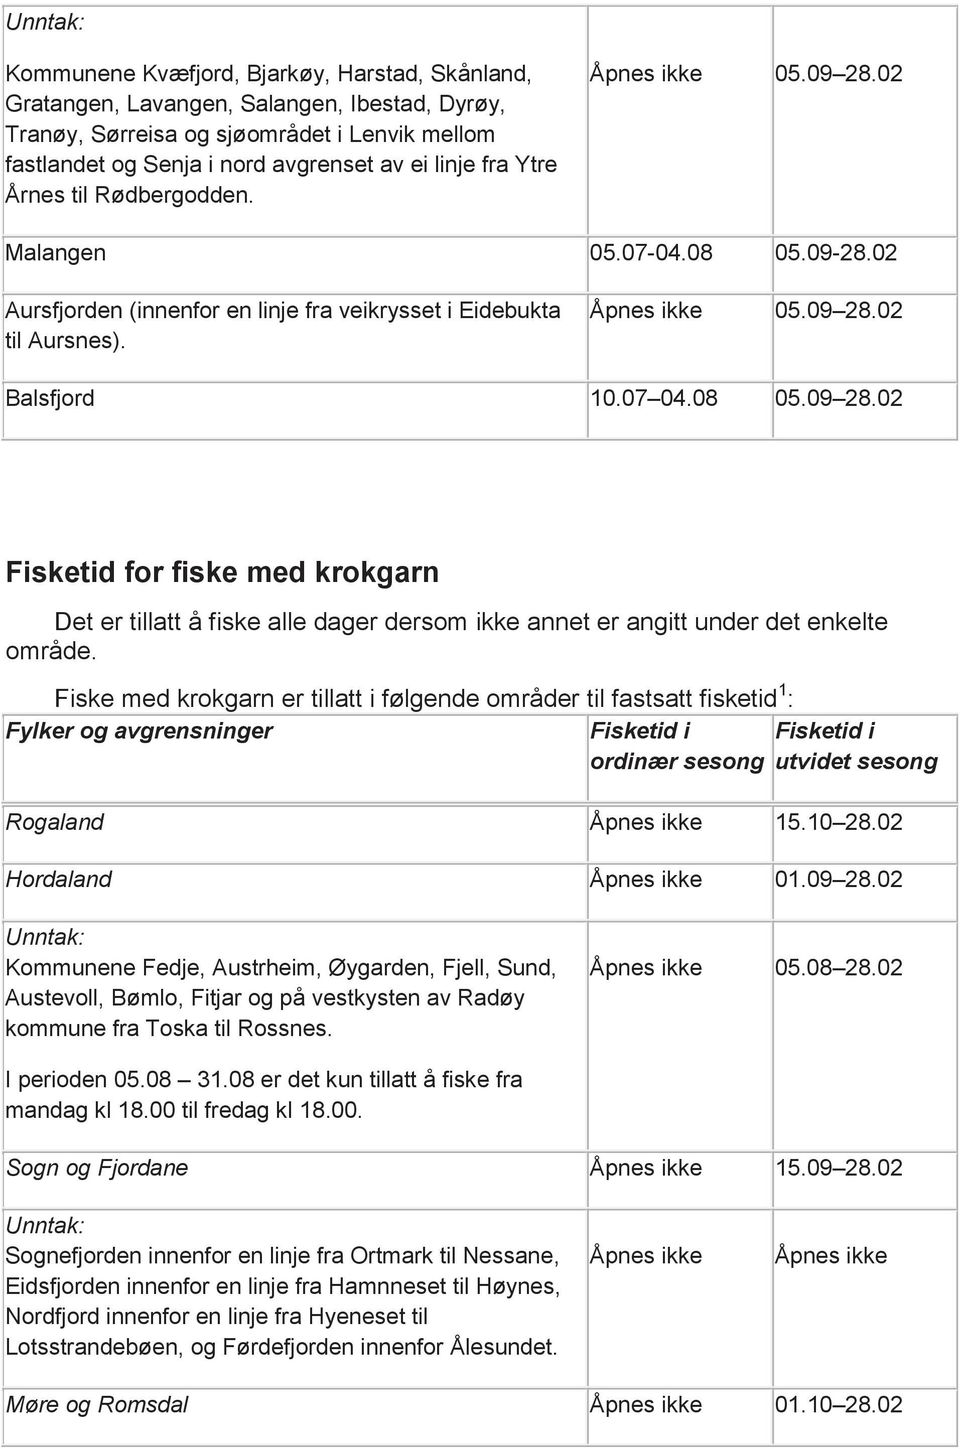 Fiske med krokgarn er tillatt i følgende områder til fastsatt fisketid 1 : Fylker og avgrensninger Fisketid i Fisketid i ordinær sesong utvidet sesong Rogaland 15.10 28.02 Hordaland 01.09 28.